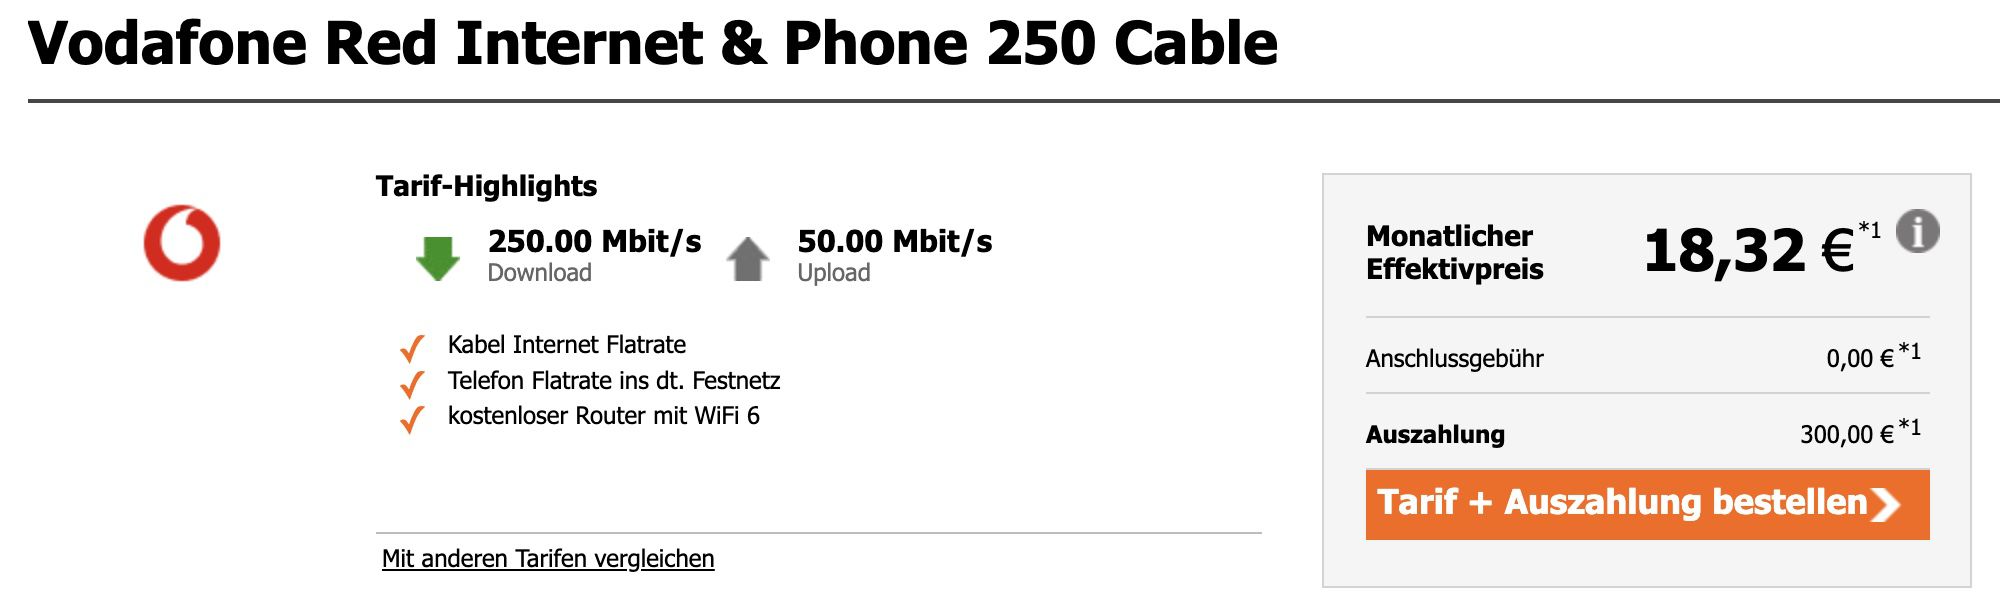 Vodafone Cable 250 für 34,99€ mtl. inkl. 300€ Auszahlung   effektiv 18,32€ mtl.